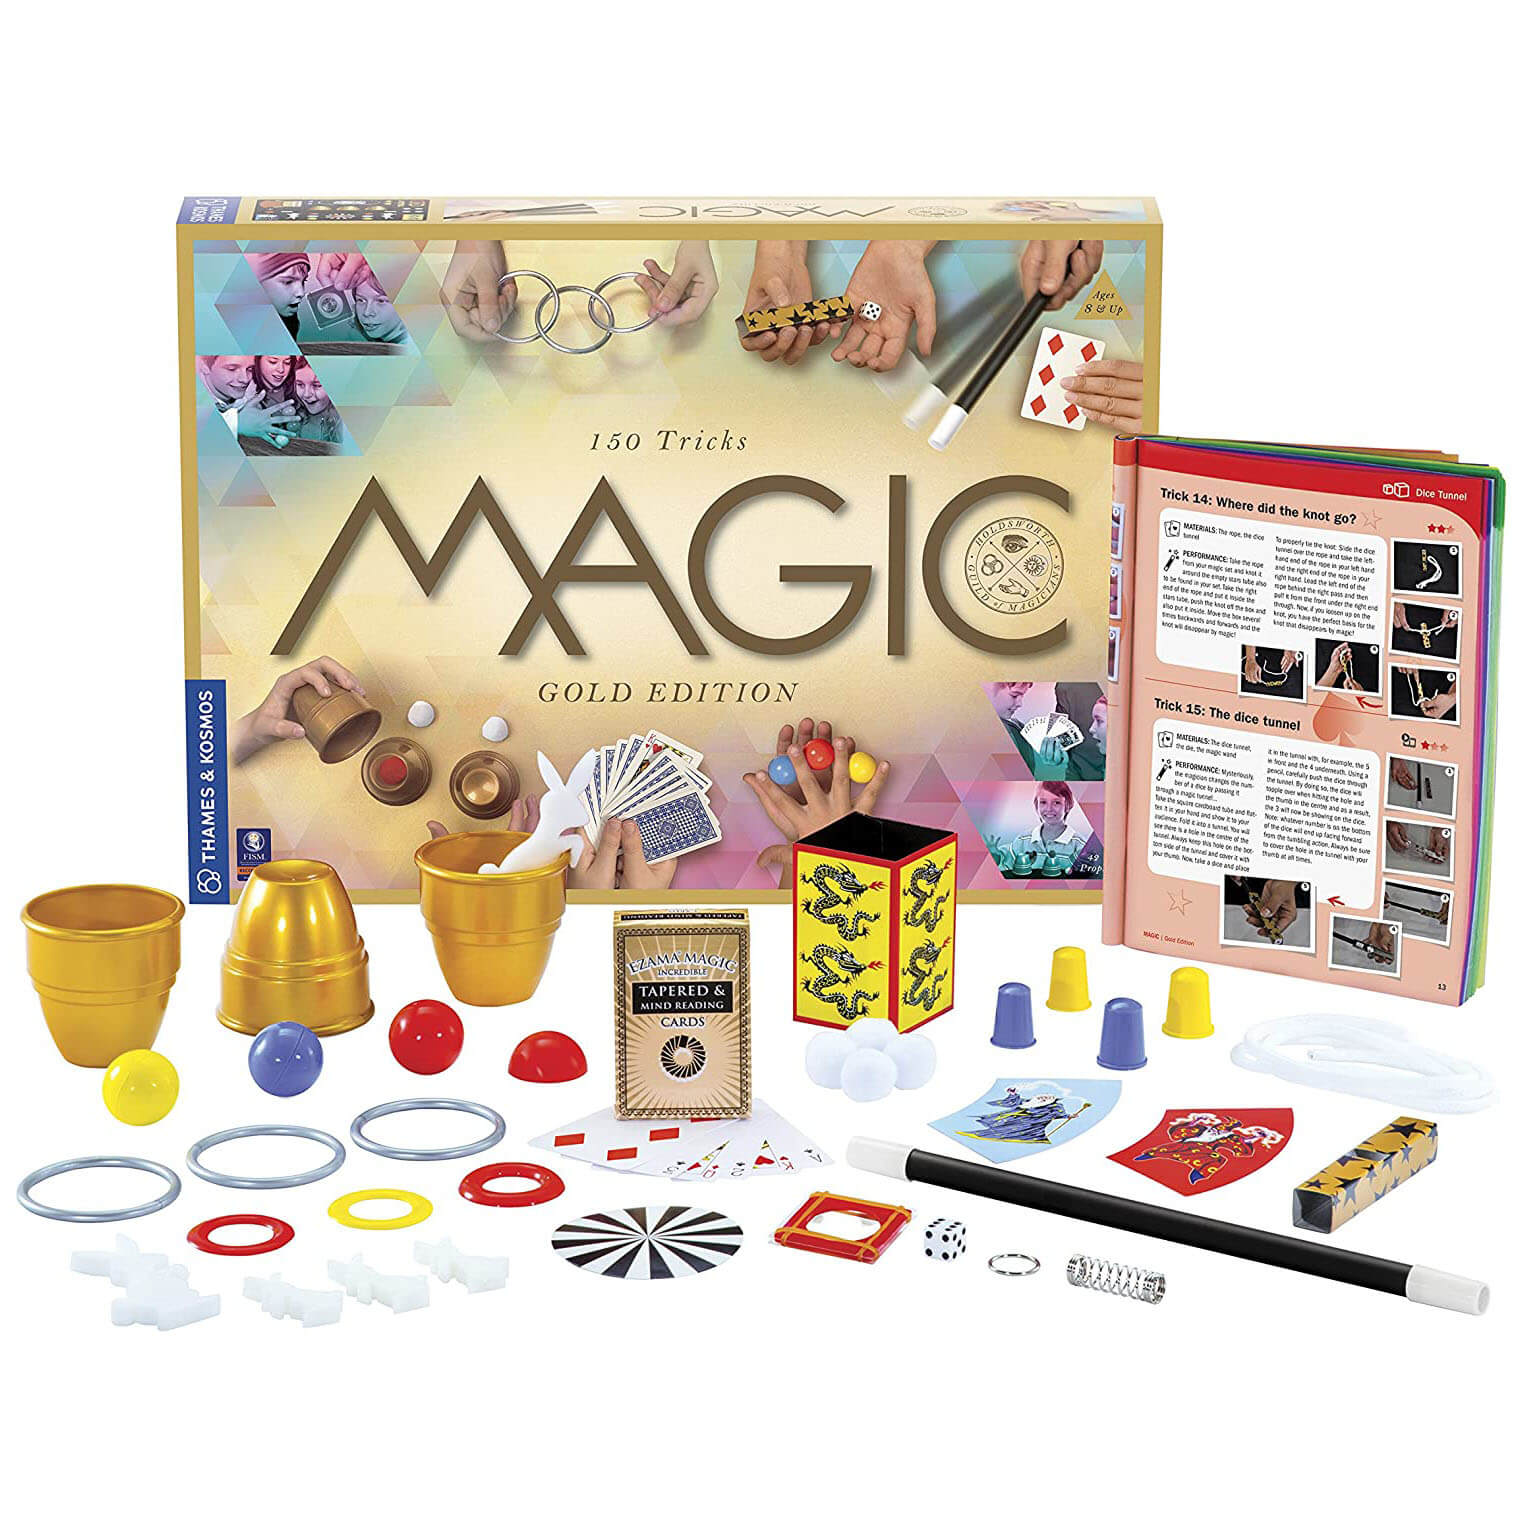 Thames and Kosmos Magic: Gold Edition